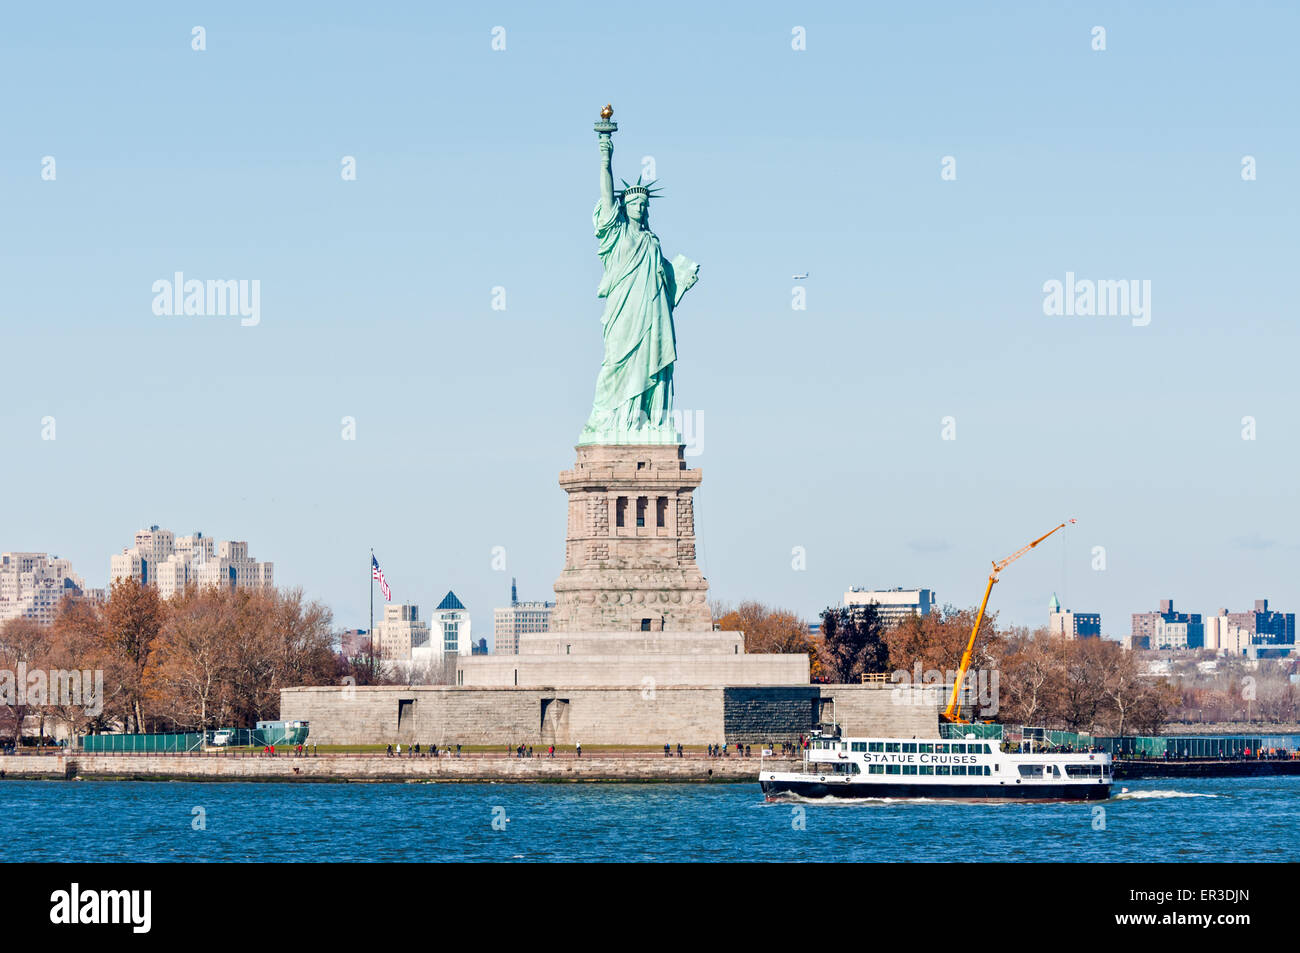 La estatua cruceros barco con los turistas que pasan por la estatua de la Libertad Foto de stock